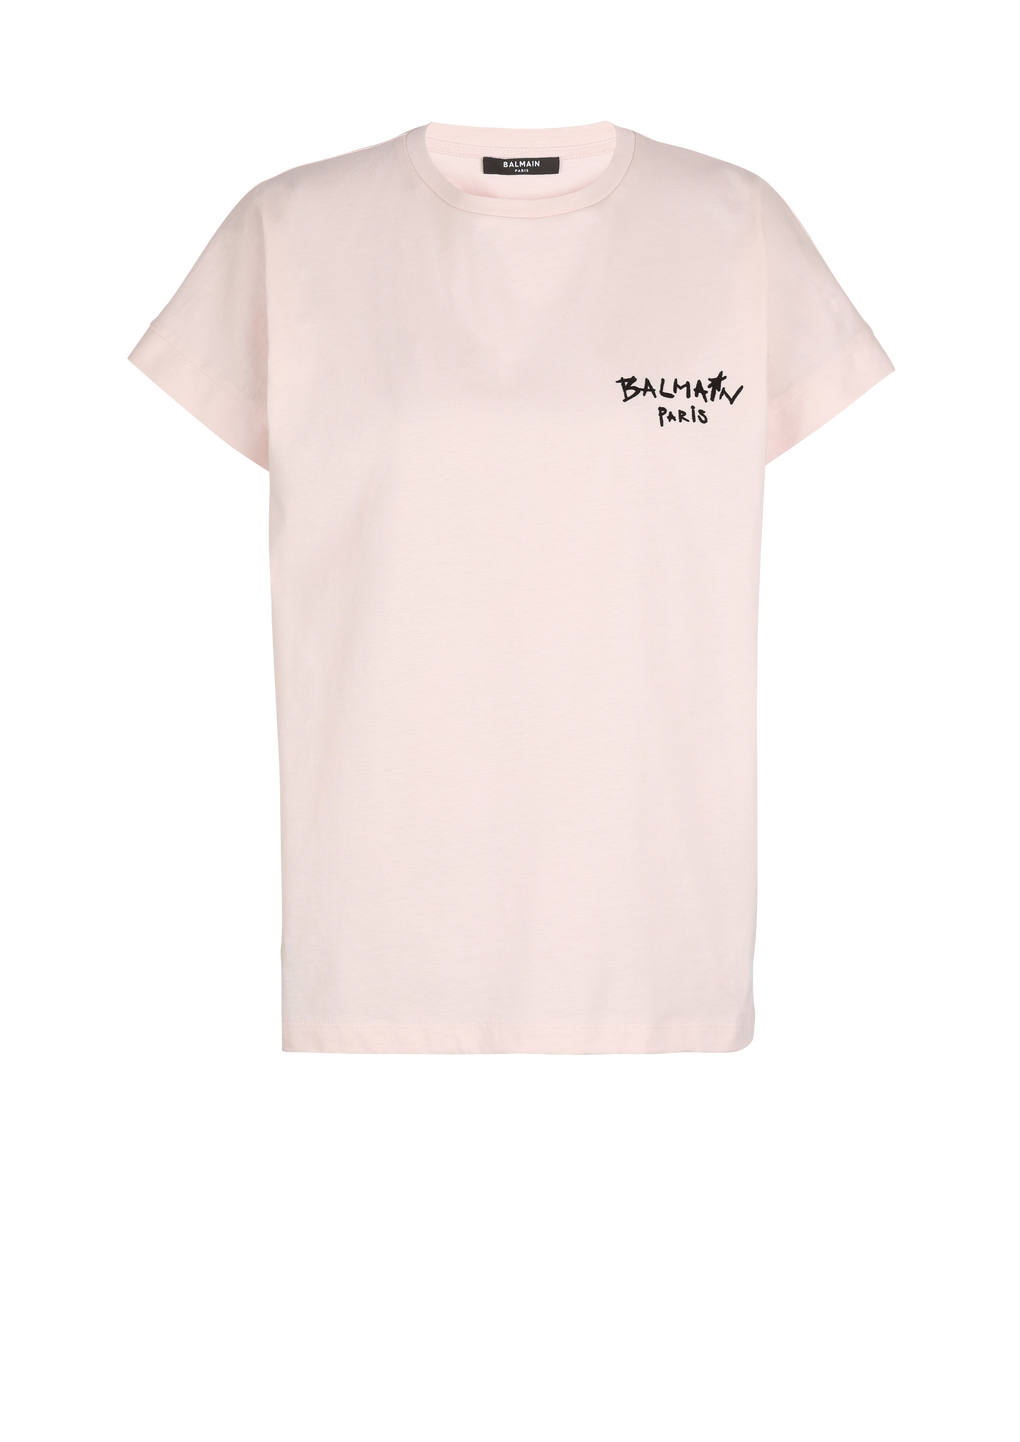 T-shirt in cotone con piccolo logo Balmain graffiti floccato, rosa, hi-res